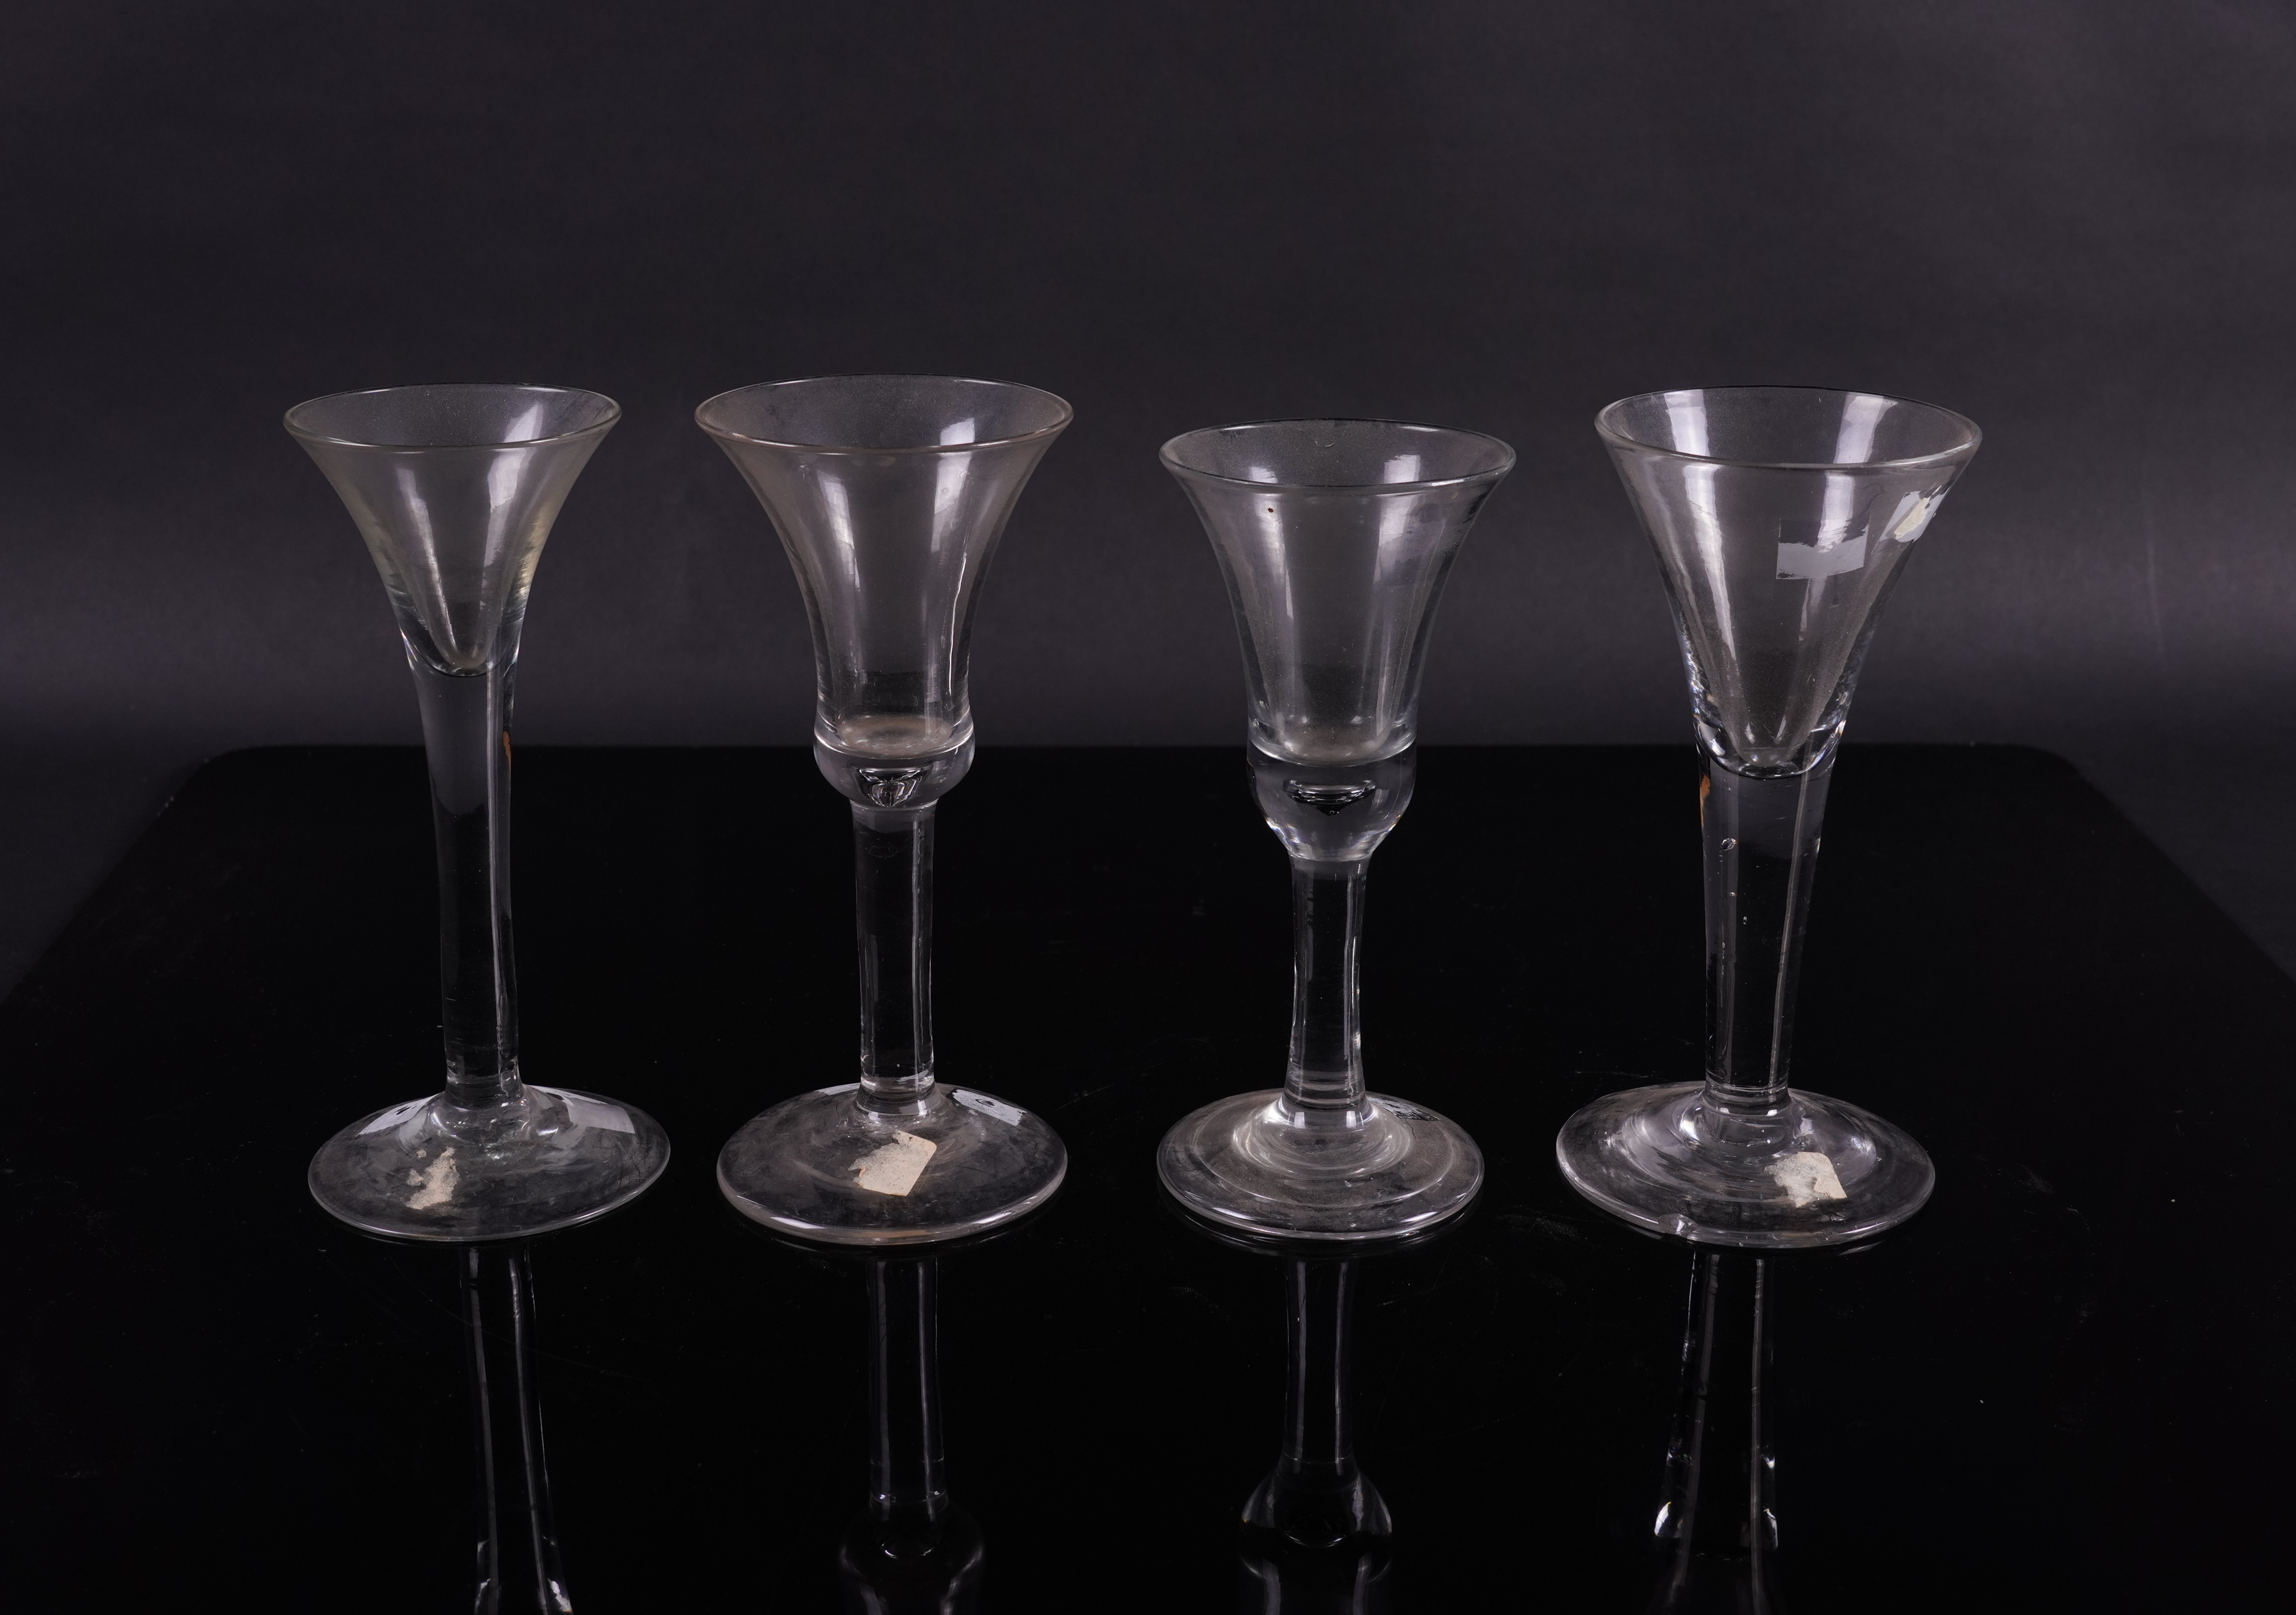 FOUR PLAIN STEMMED WINE GLASSES (4) - Image 2 of 2